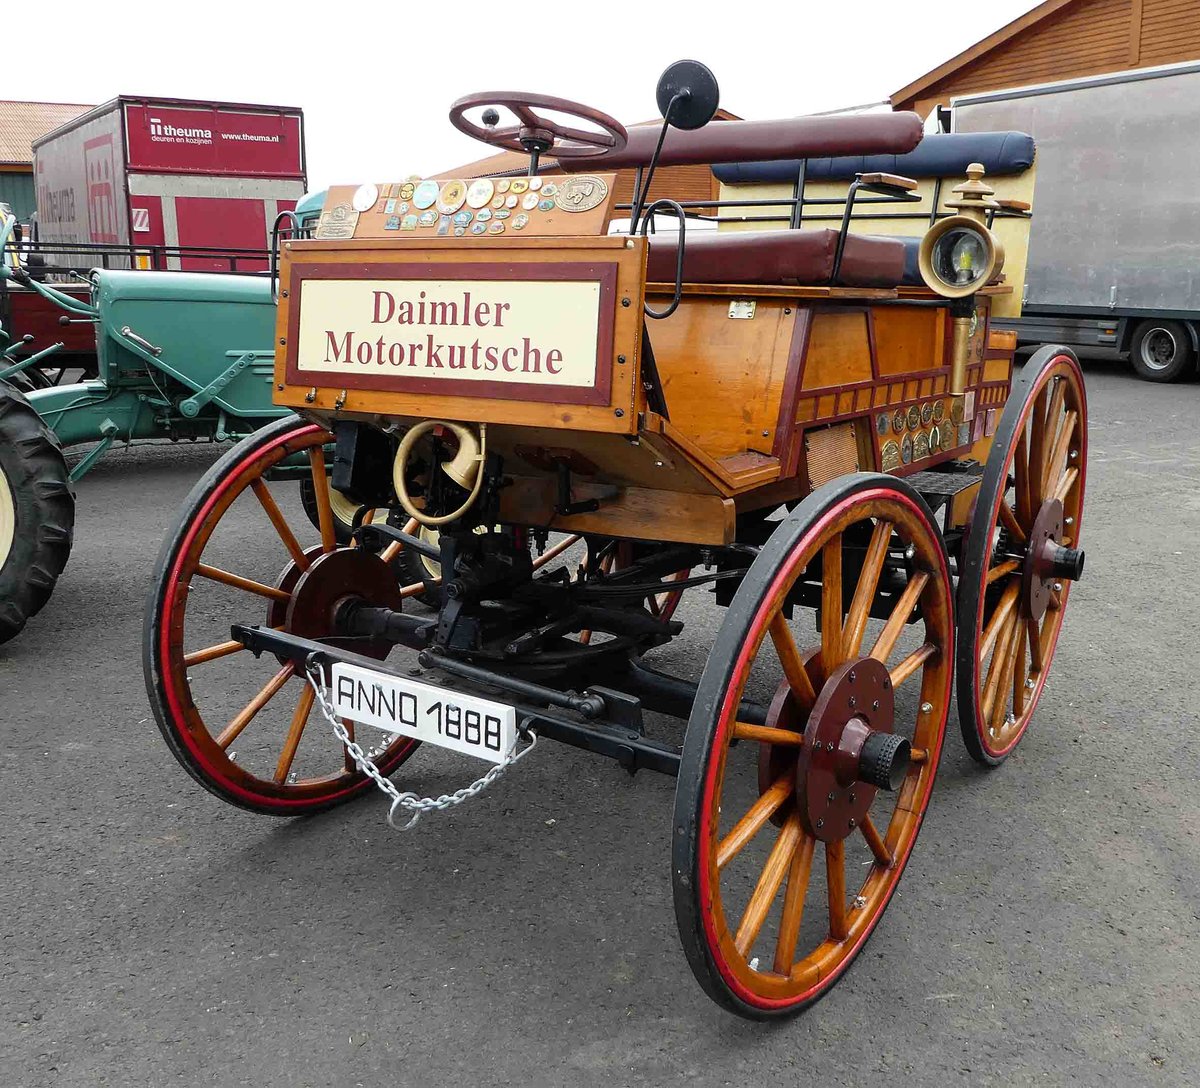 =Nachbau der Daimler Motorkutsche von 1888, gesehen bei der Bulldogmesse in Alsfeld im Oktober 2017